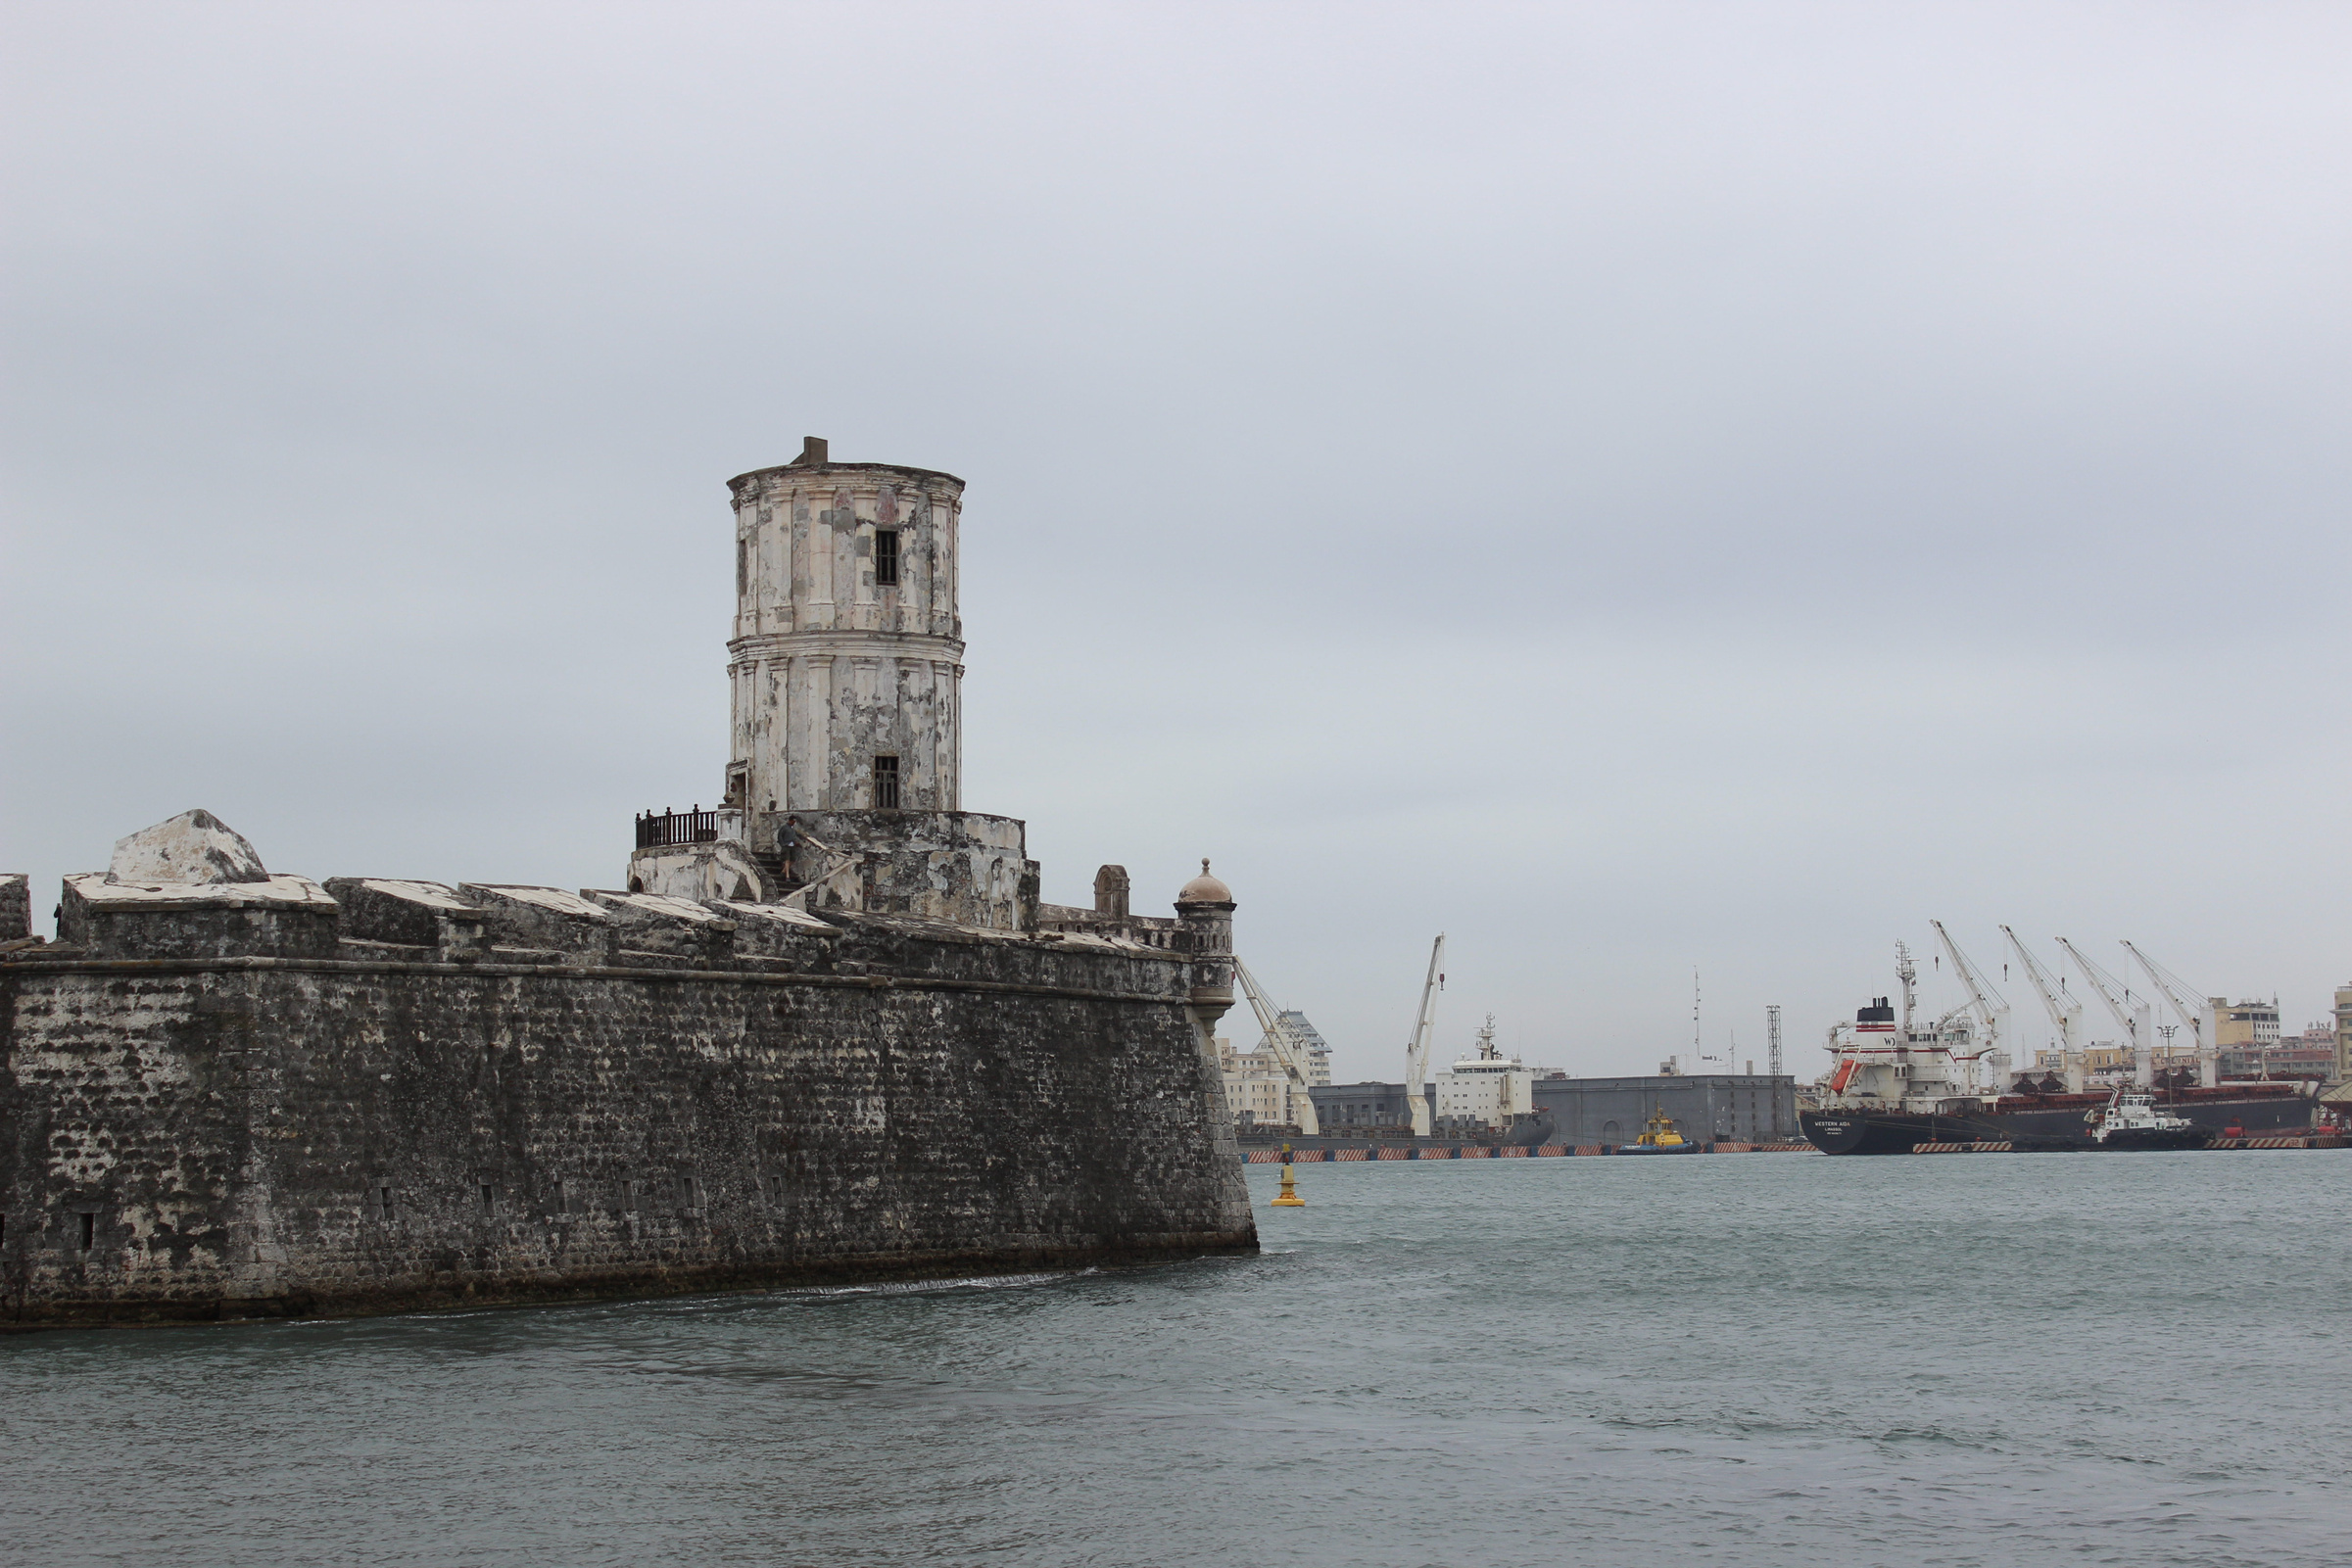 Puerto de Veracruz celebra este lunes 500 años de historia